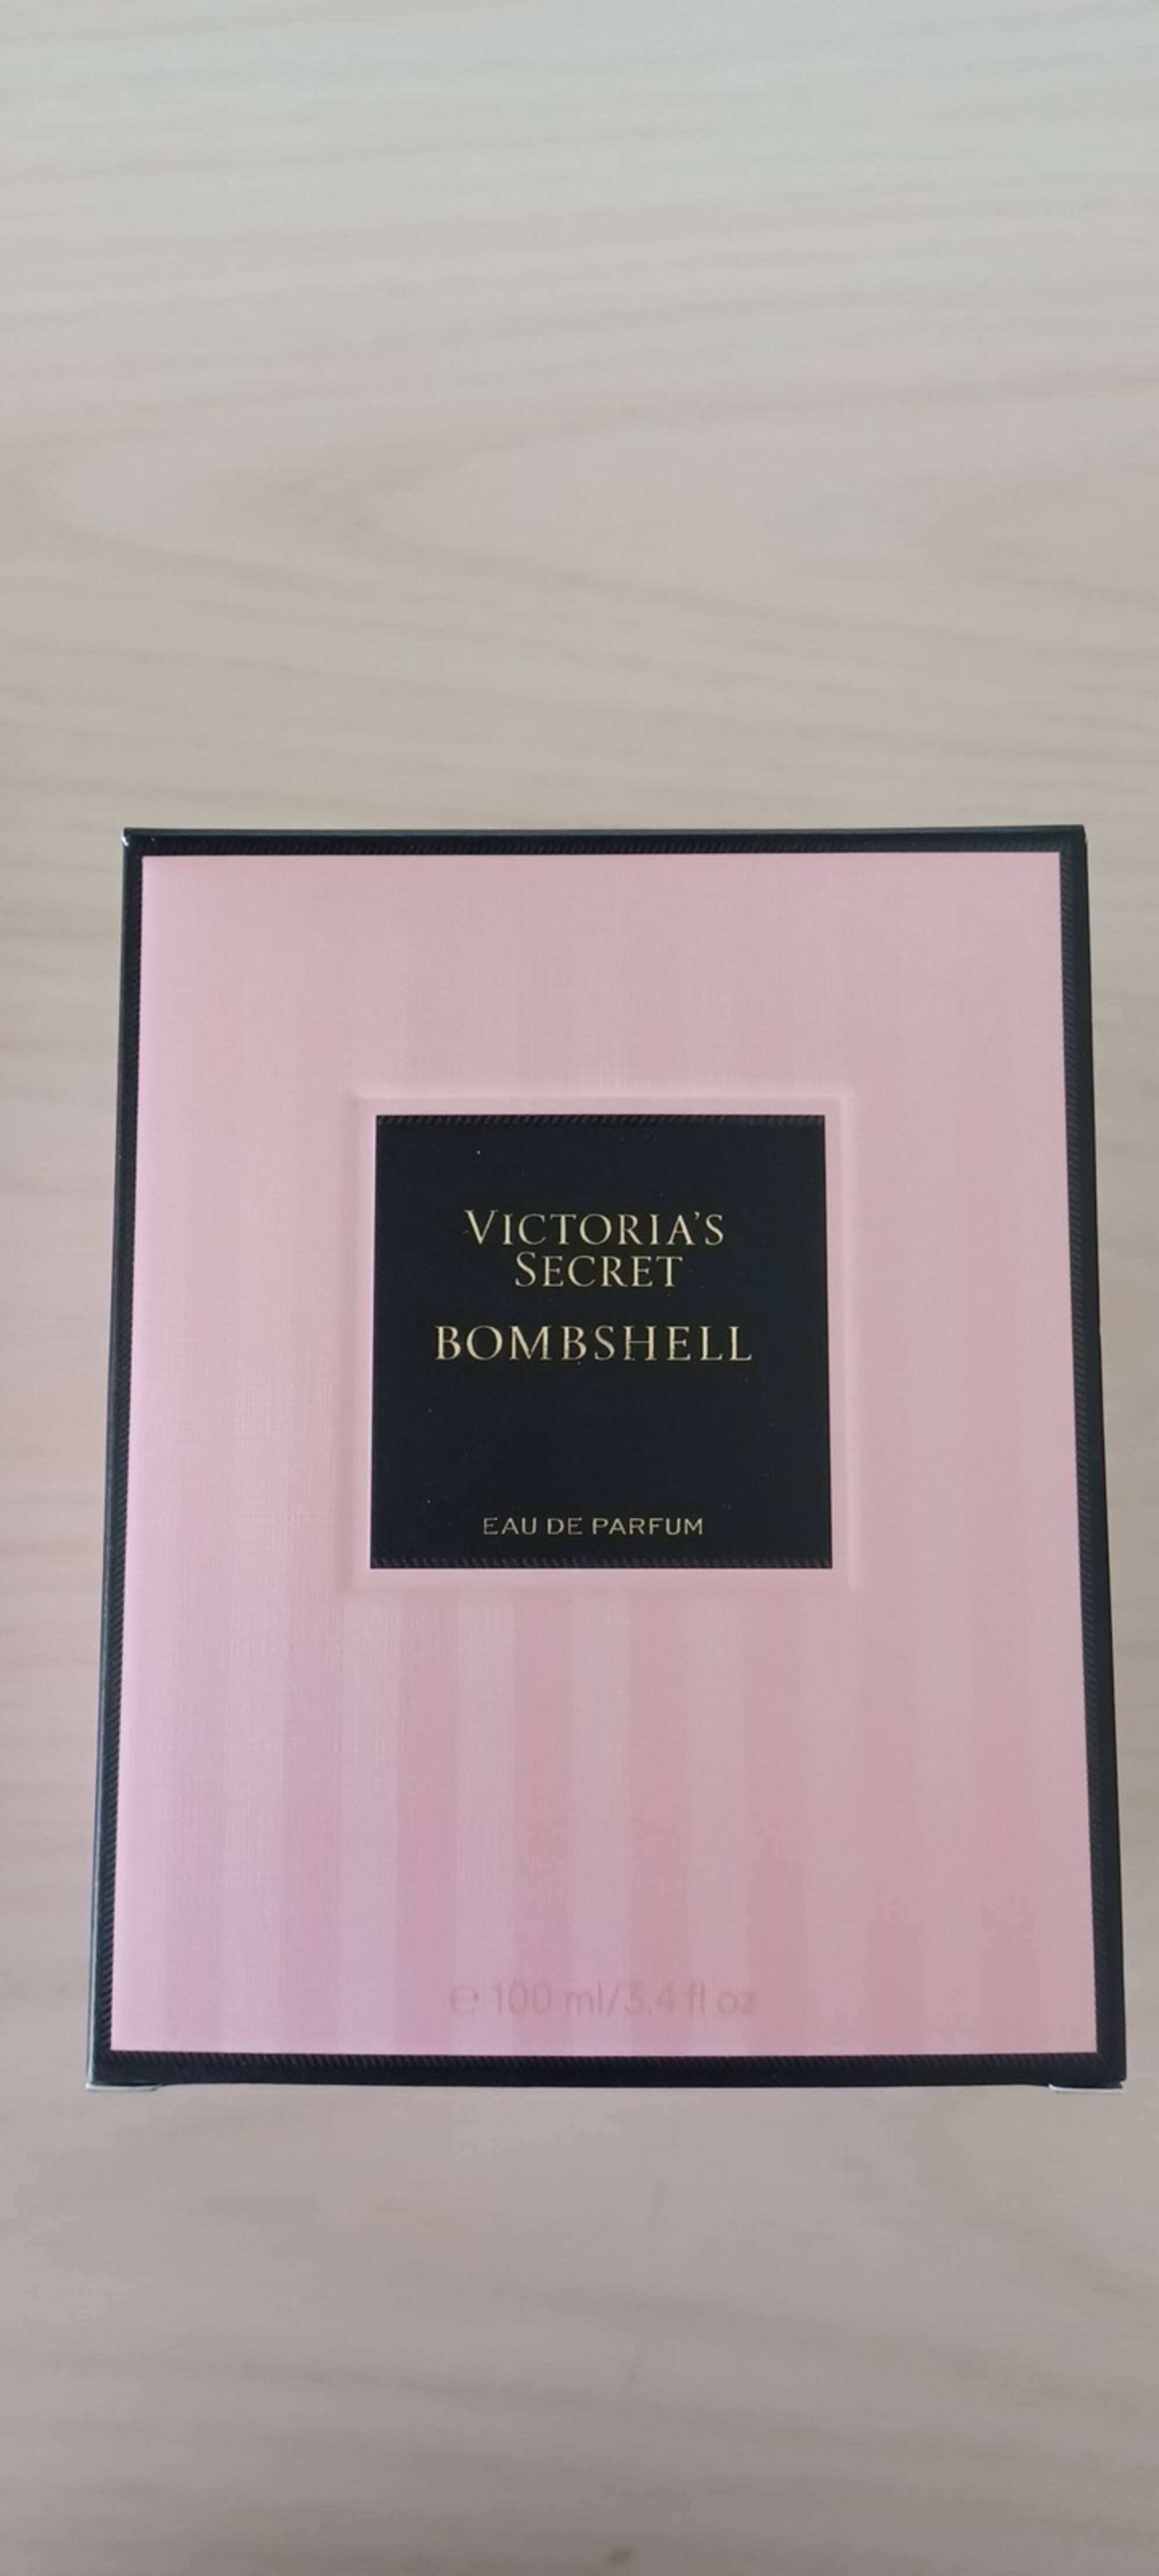 VICTORIA'S SECRET - Bombshell - Eau de parfum